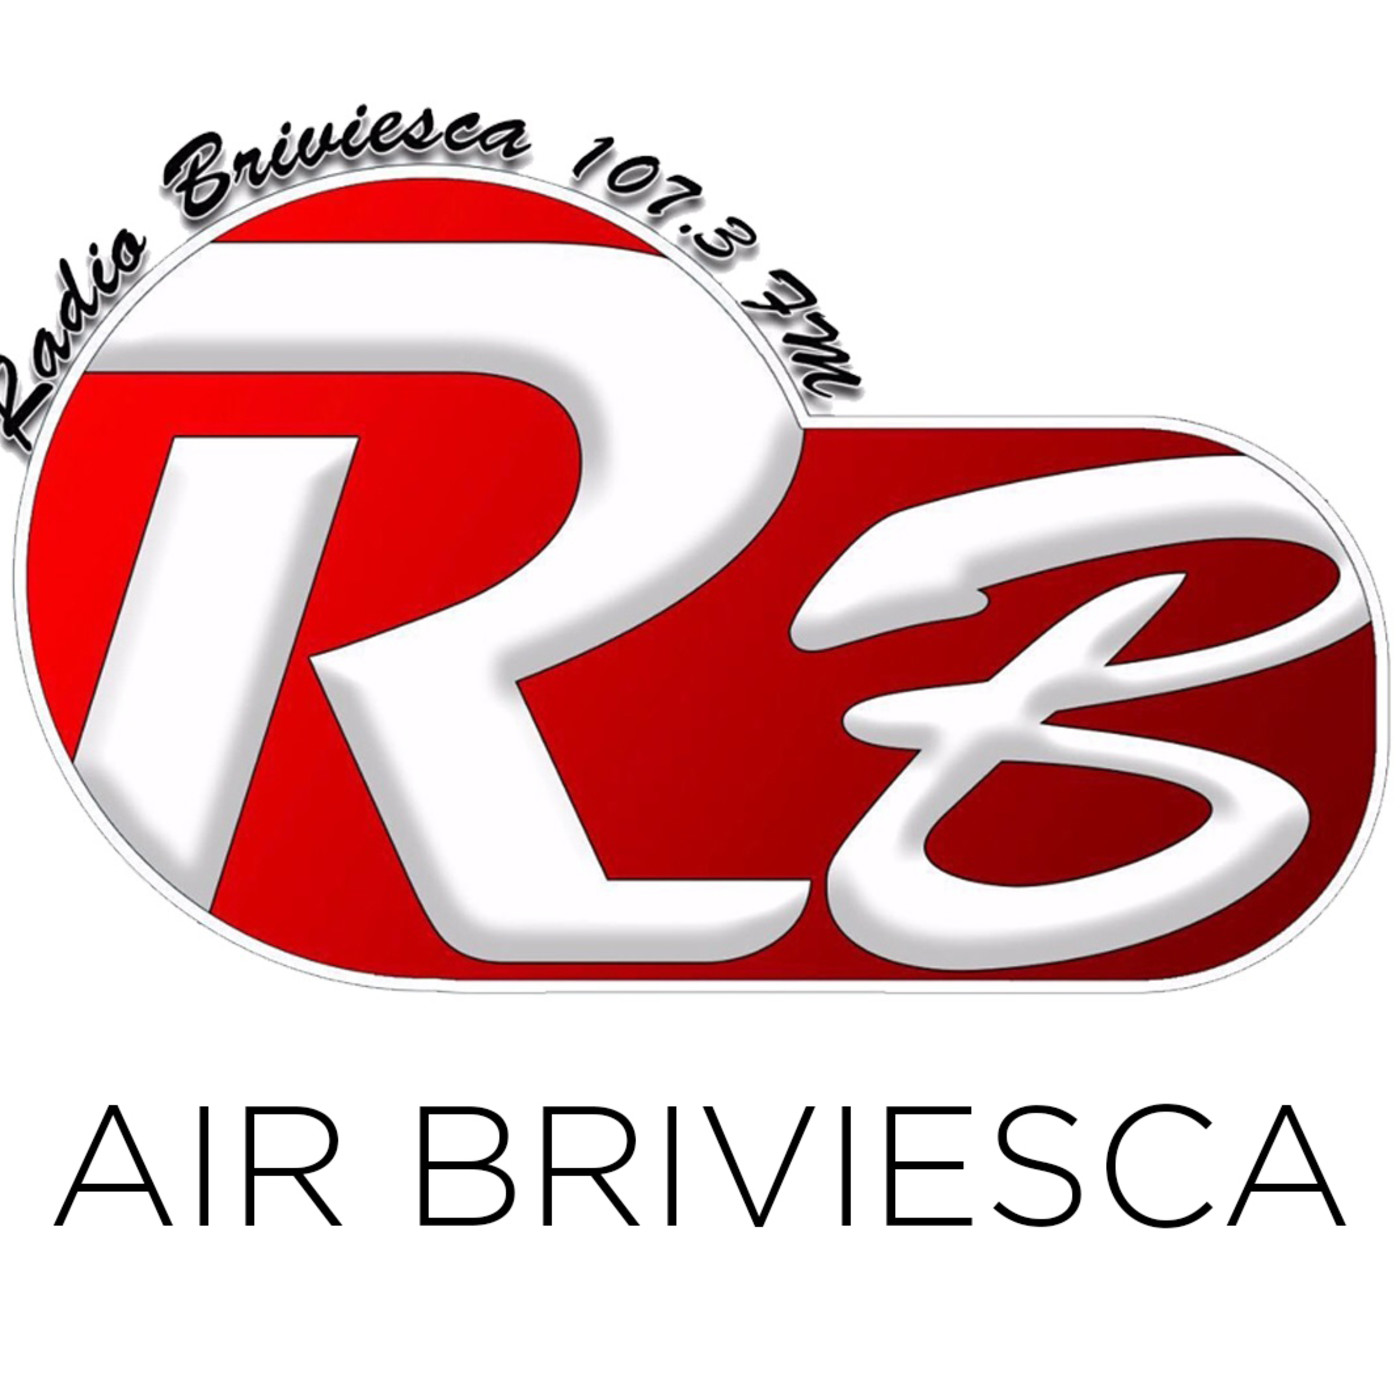 Air Briviesca 03/12/2017